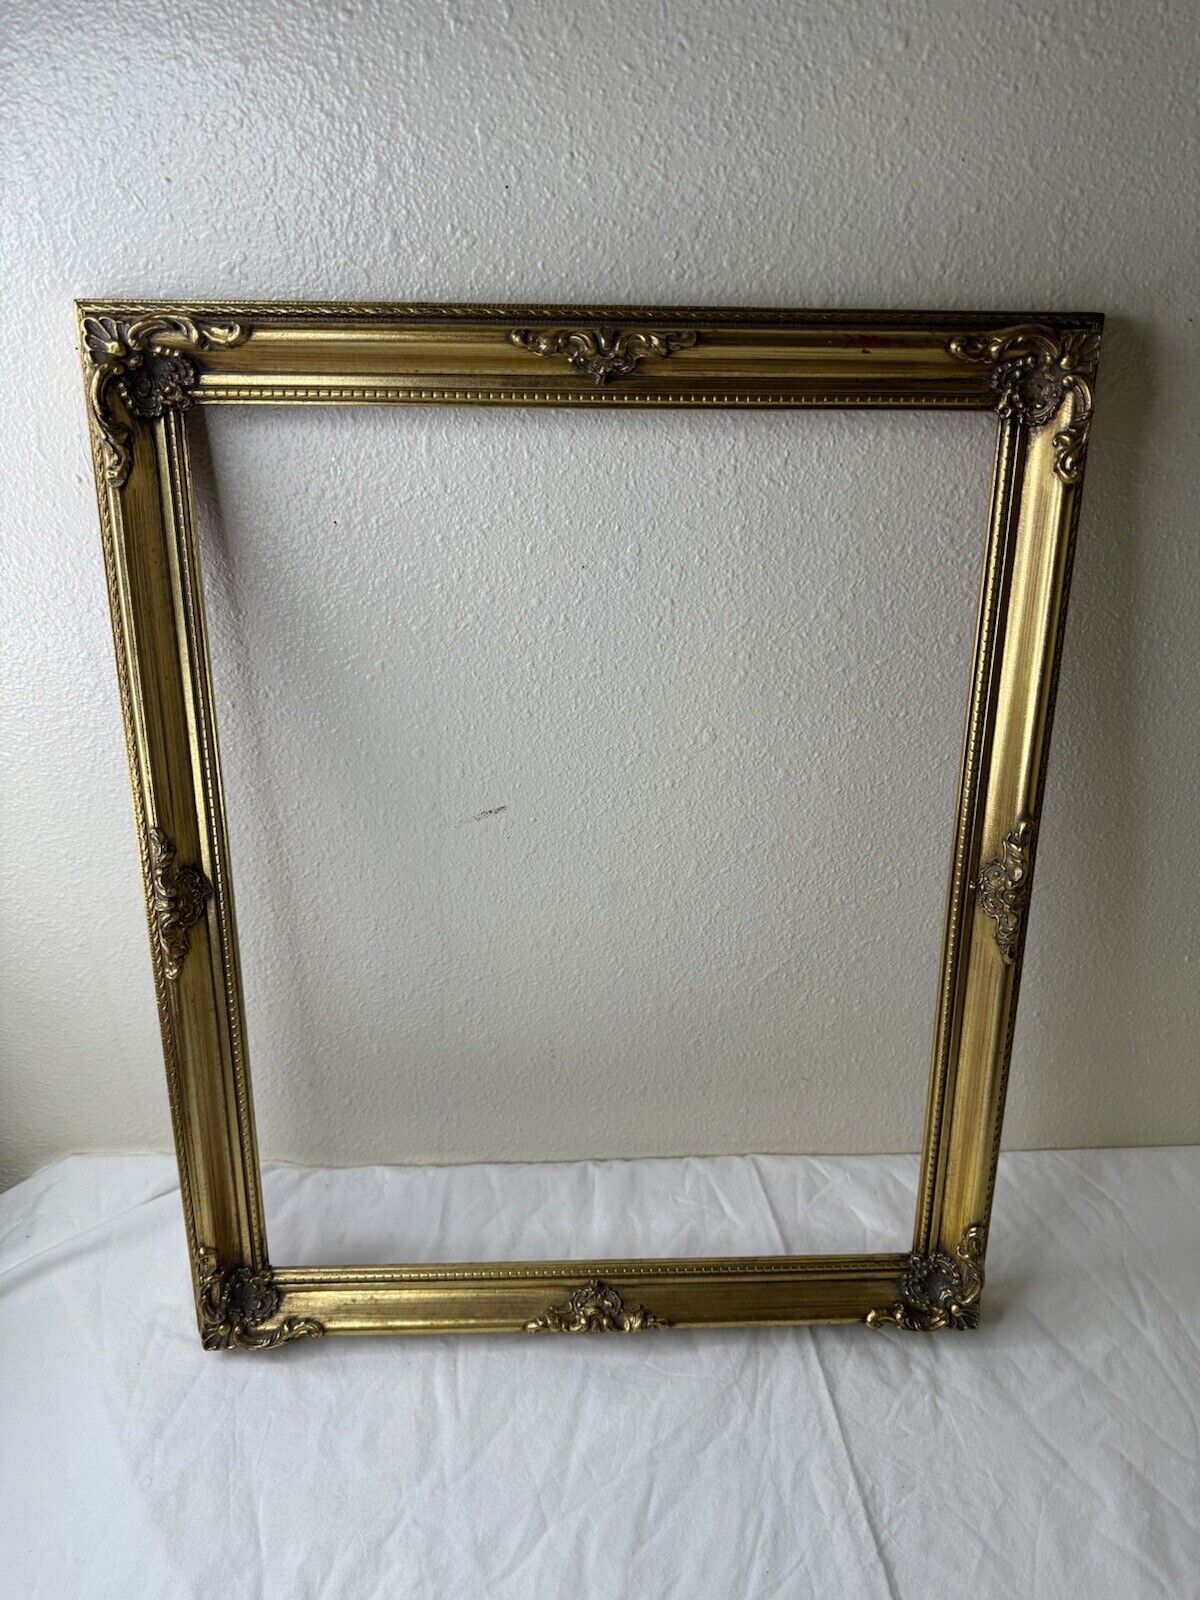 Vintage Antique Gold Tone Ornate Wood  Frame 23”X 19” Artwork Hoe Decor Large